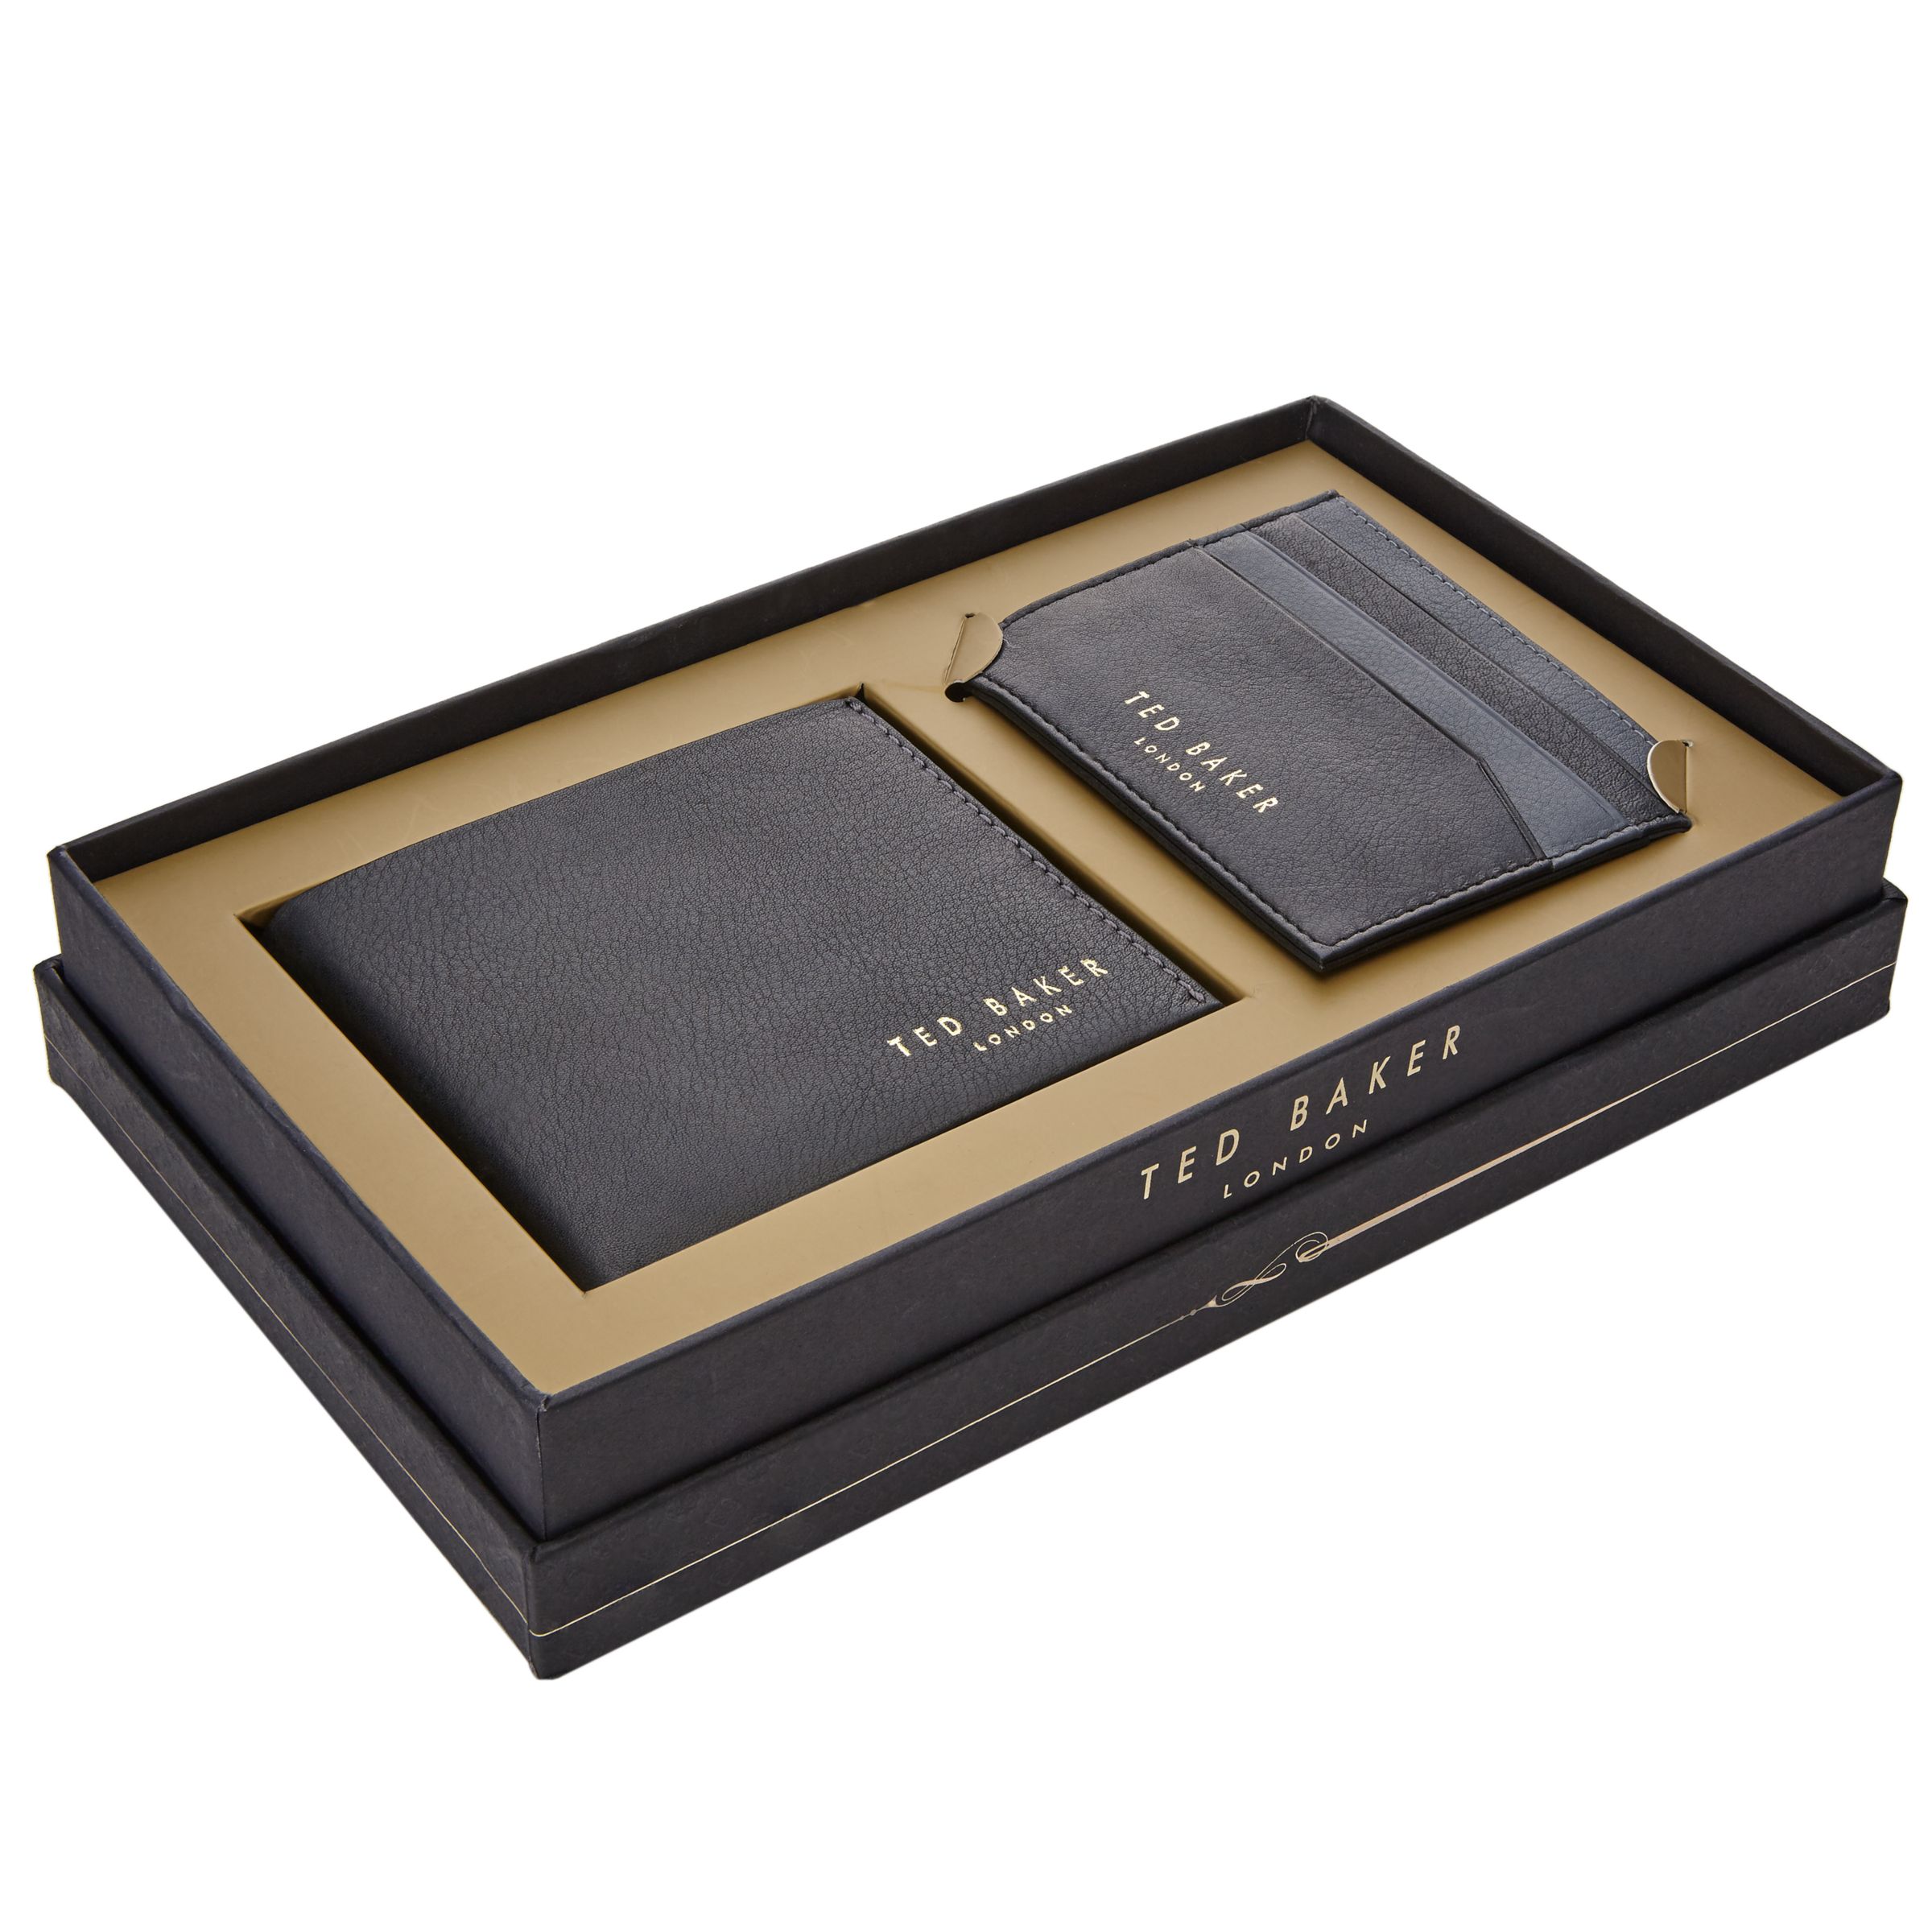 Ted Baker Leather Wallet & Card Holder Gift Set, Black at John Lewis & Partners